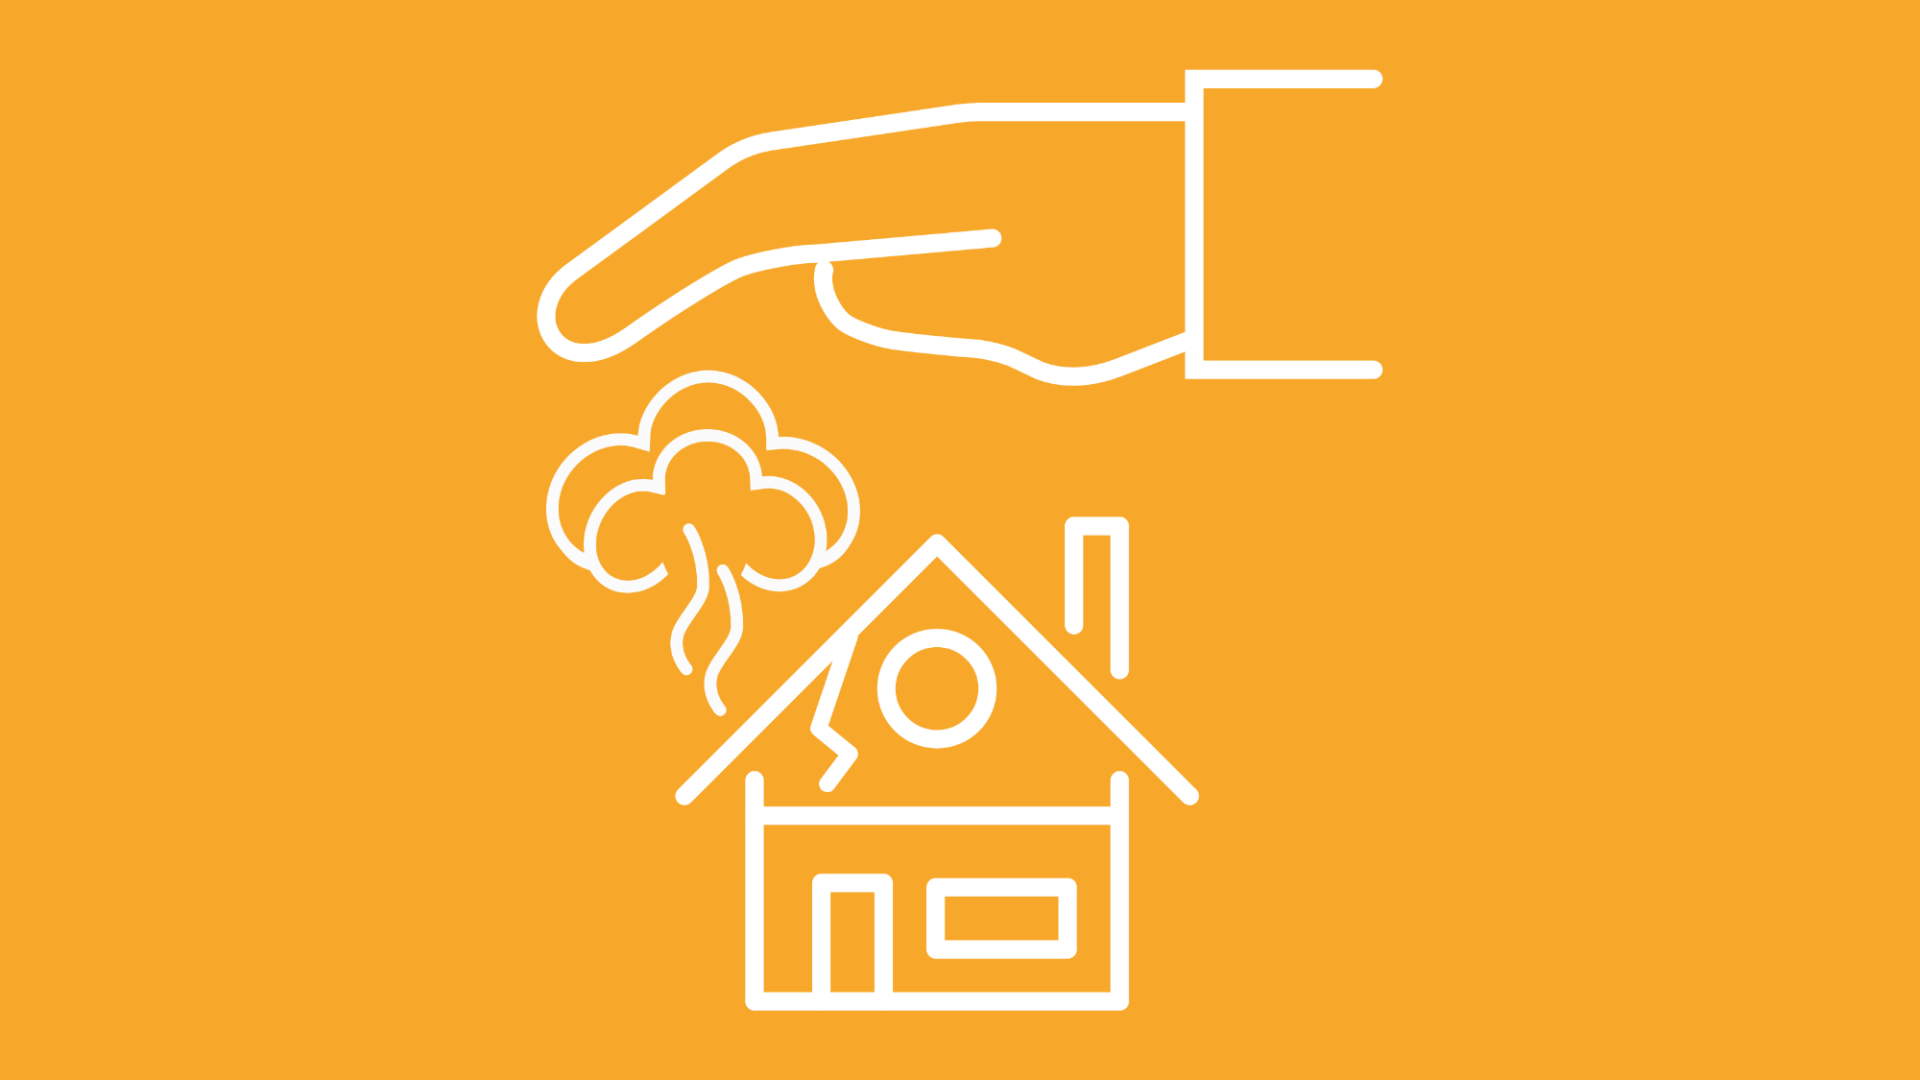 Die Grafik zeigt eine schützende Hand, die eine Versicherung darstellt, die bei einem Sengschaden das Haus versichert.